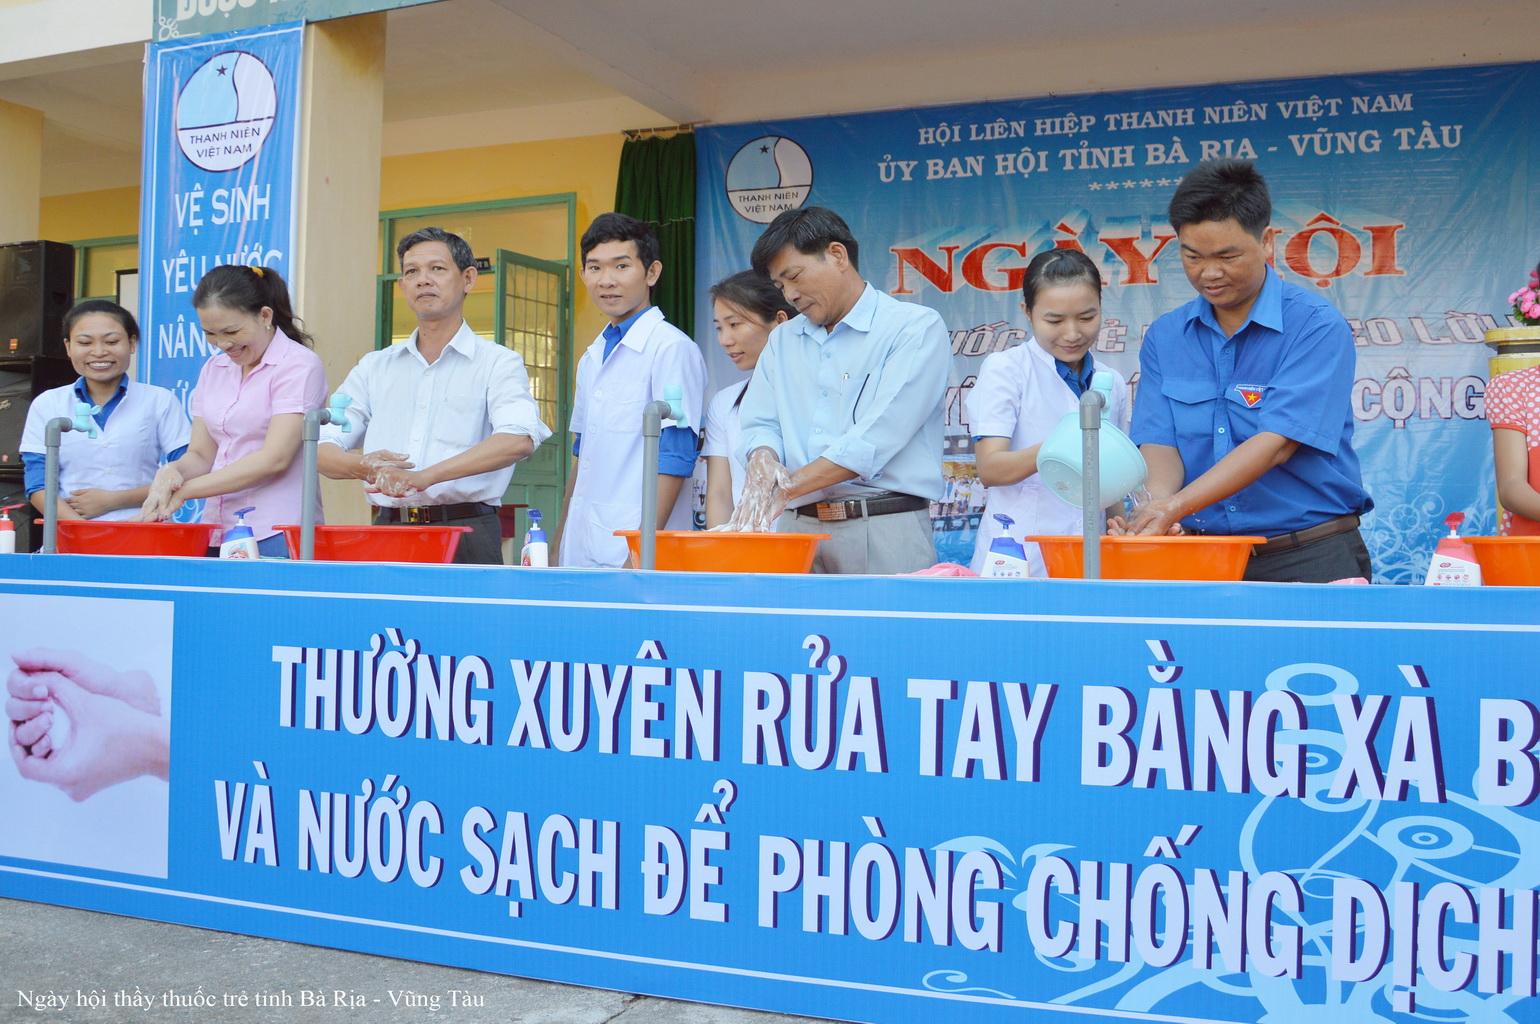 hoatdong_12.jpg - lãnh đạo SYT tham gia ngày hội rửa tay bằng xà phòng cùng hội LHTN tỉnh